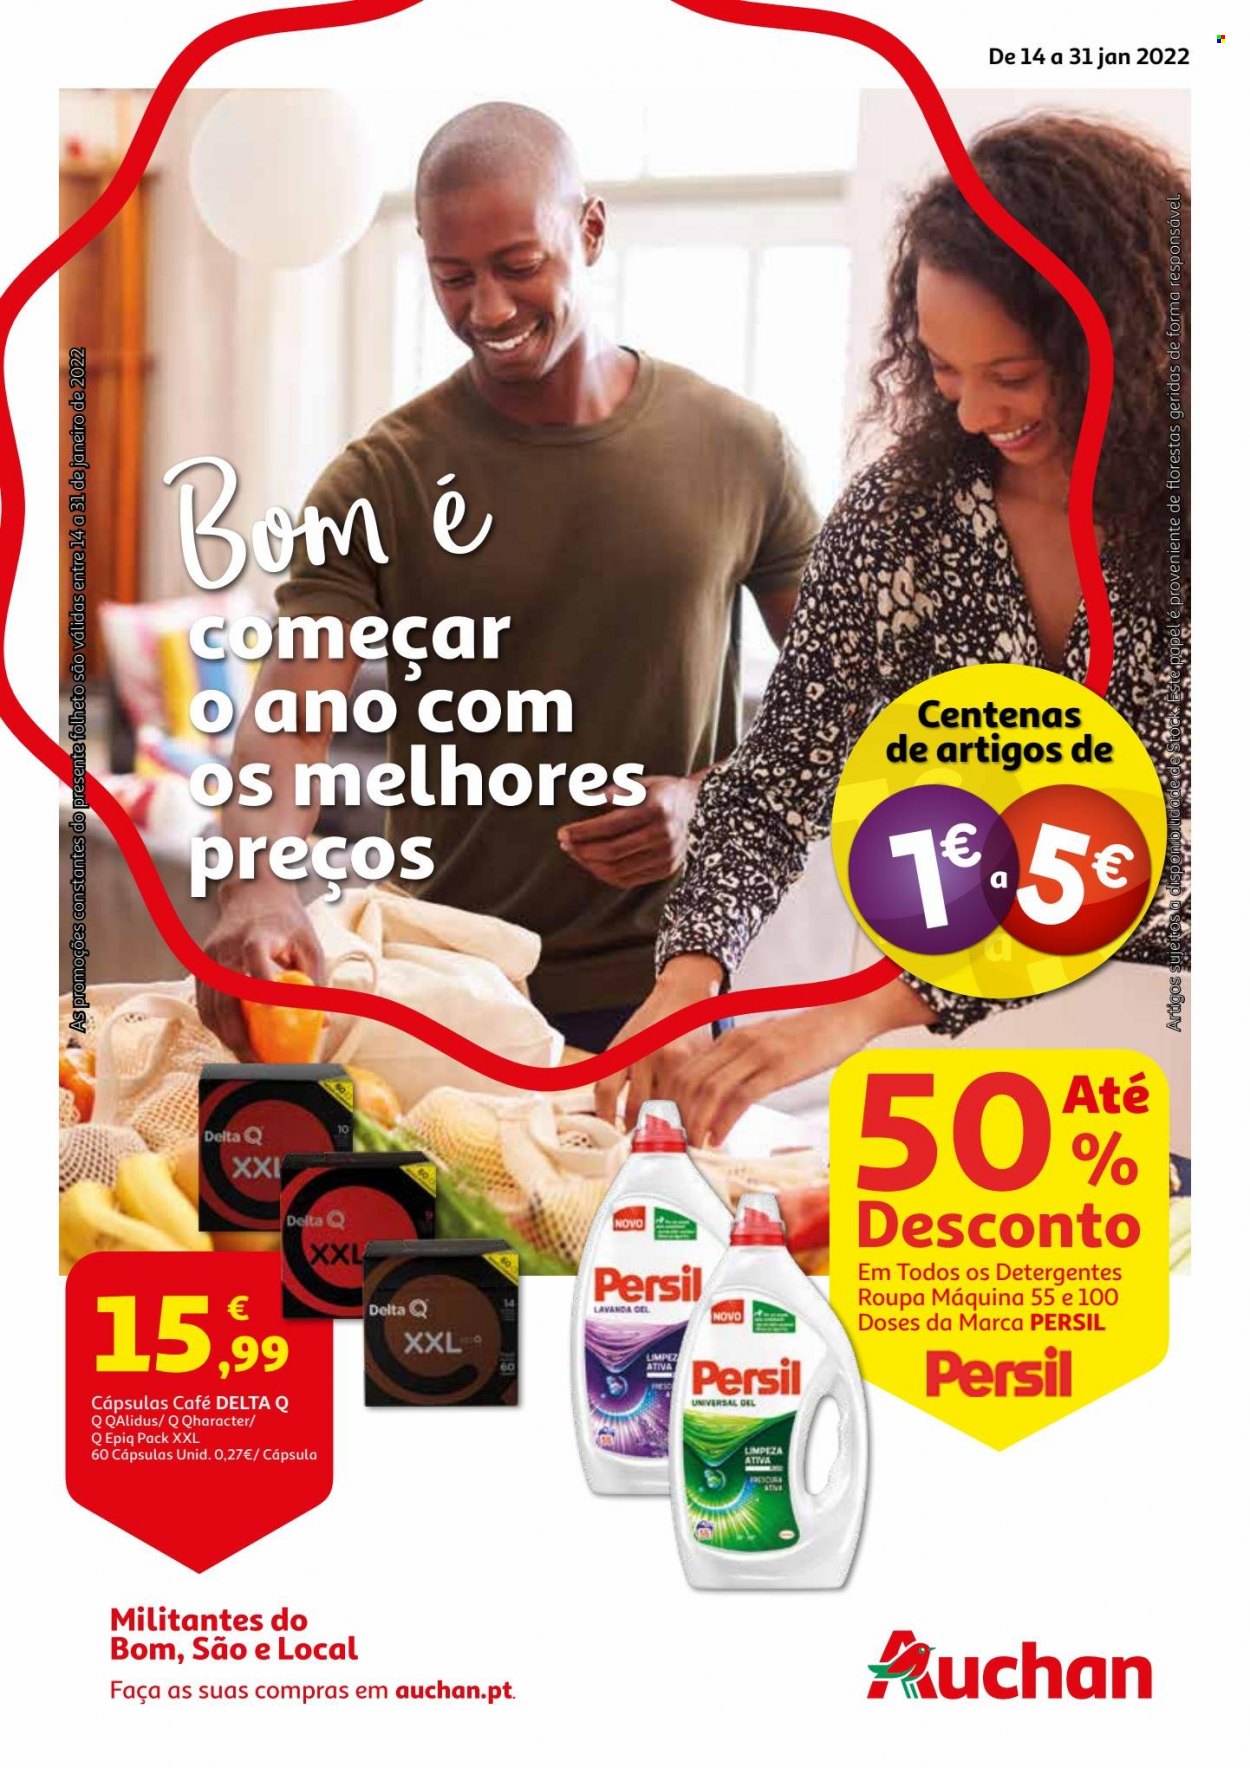 thumbnail - Folheto Auchan - 14.1.2022 - 31.1.2022 - Produtos em promoção - Persil, café, Delta Q, detergente. Página 1.